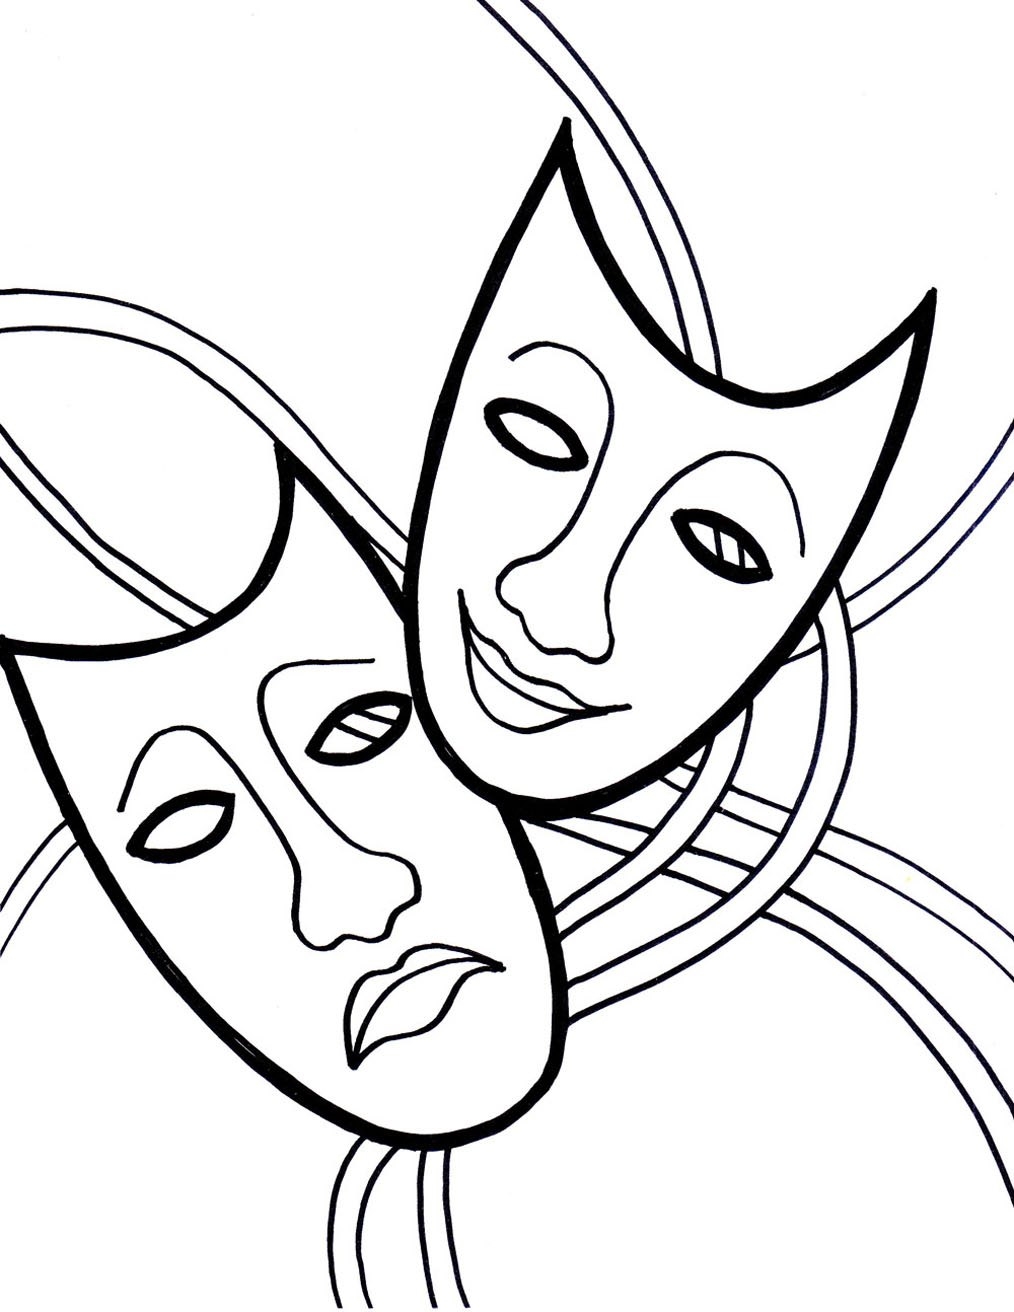 Театральная маска рисунок карандашом